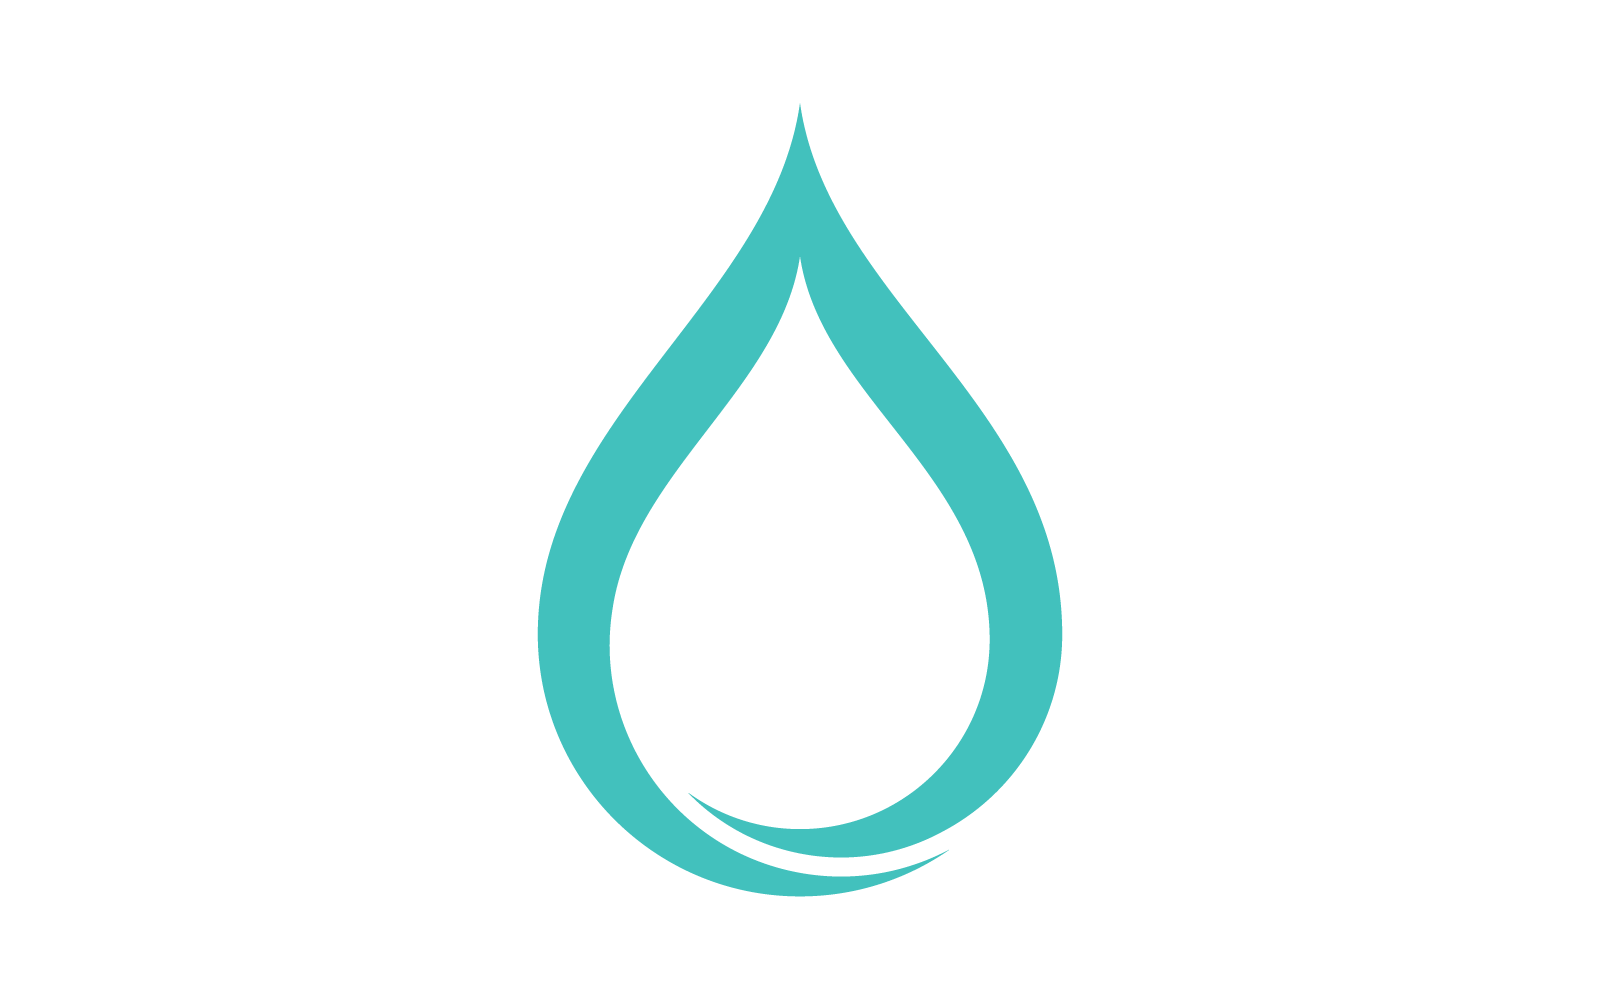 Water drop logo vector design